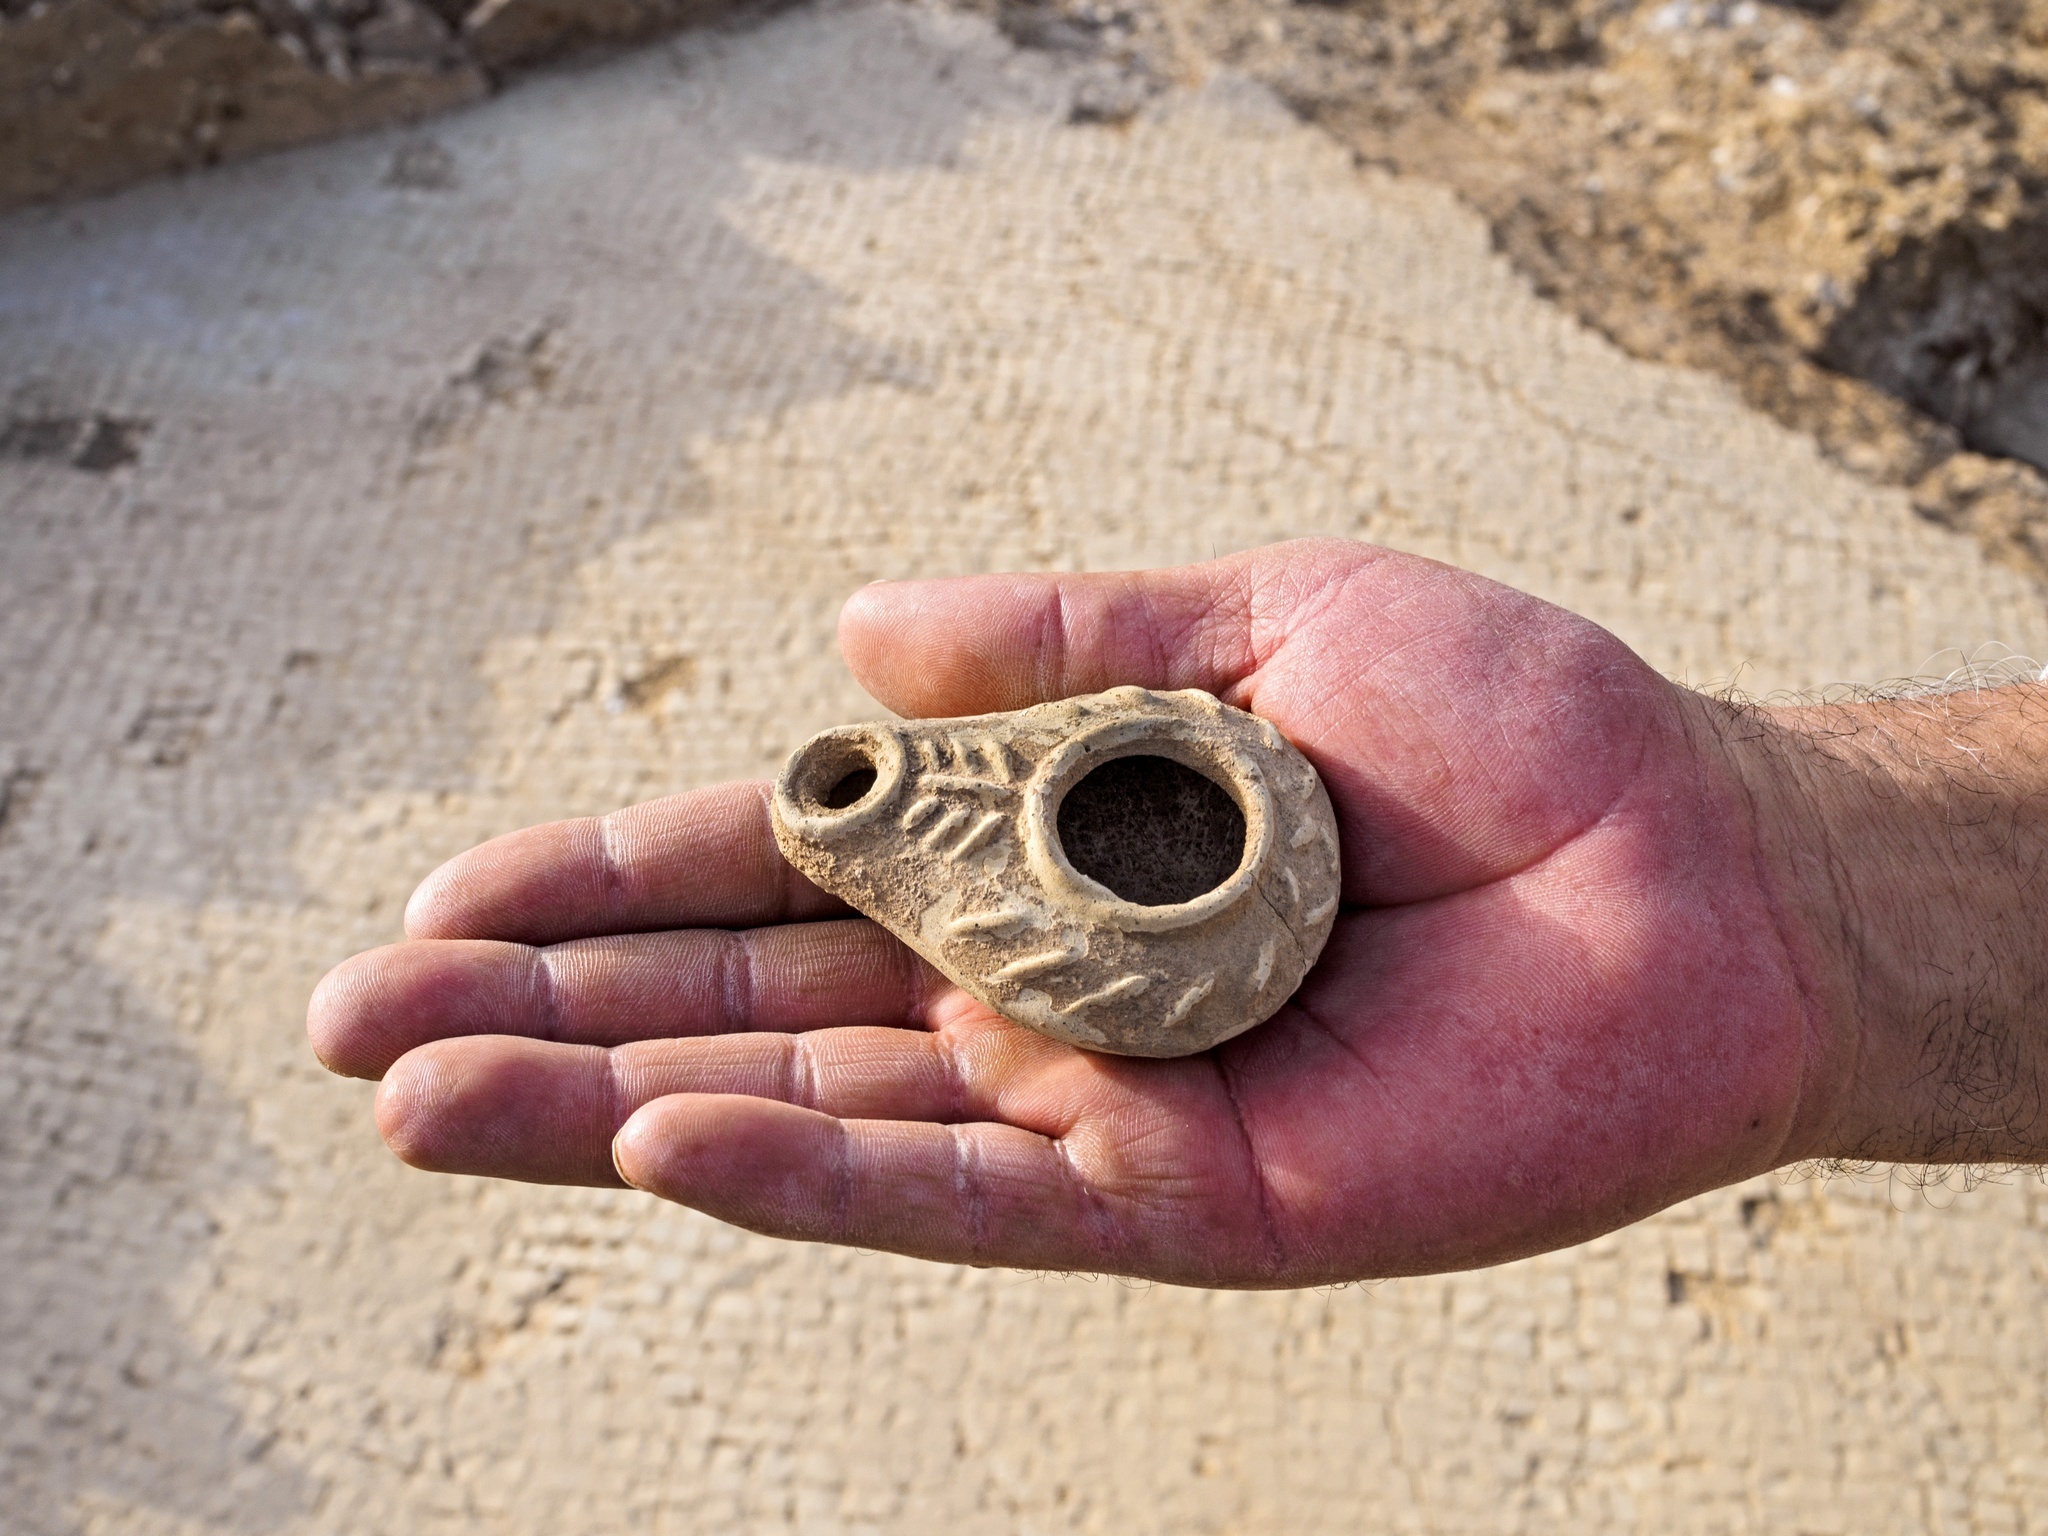 נר שמן ביזנטי שנמצא בחפירה ליד אבו גוש - צילום: אסף פרץ